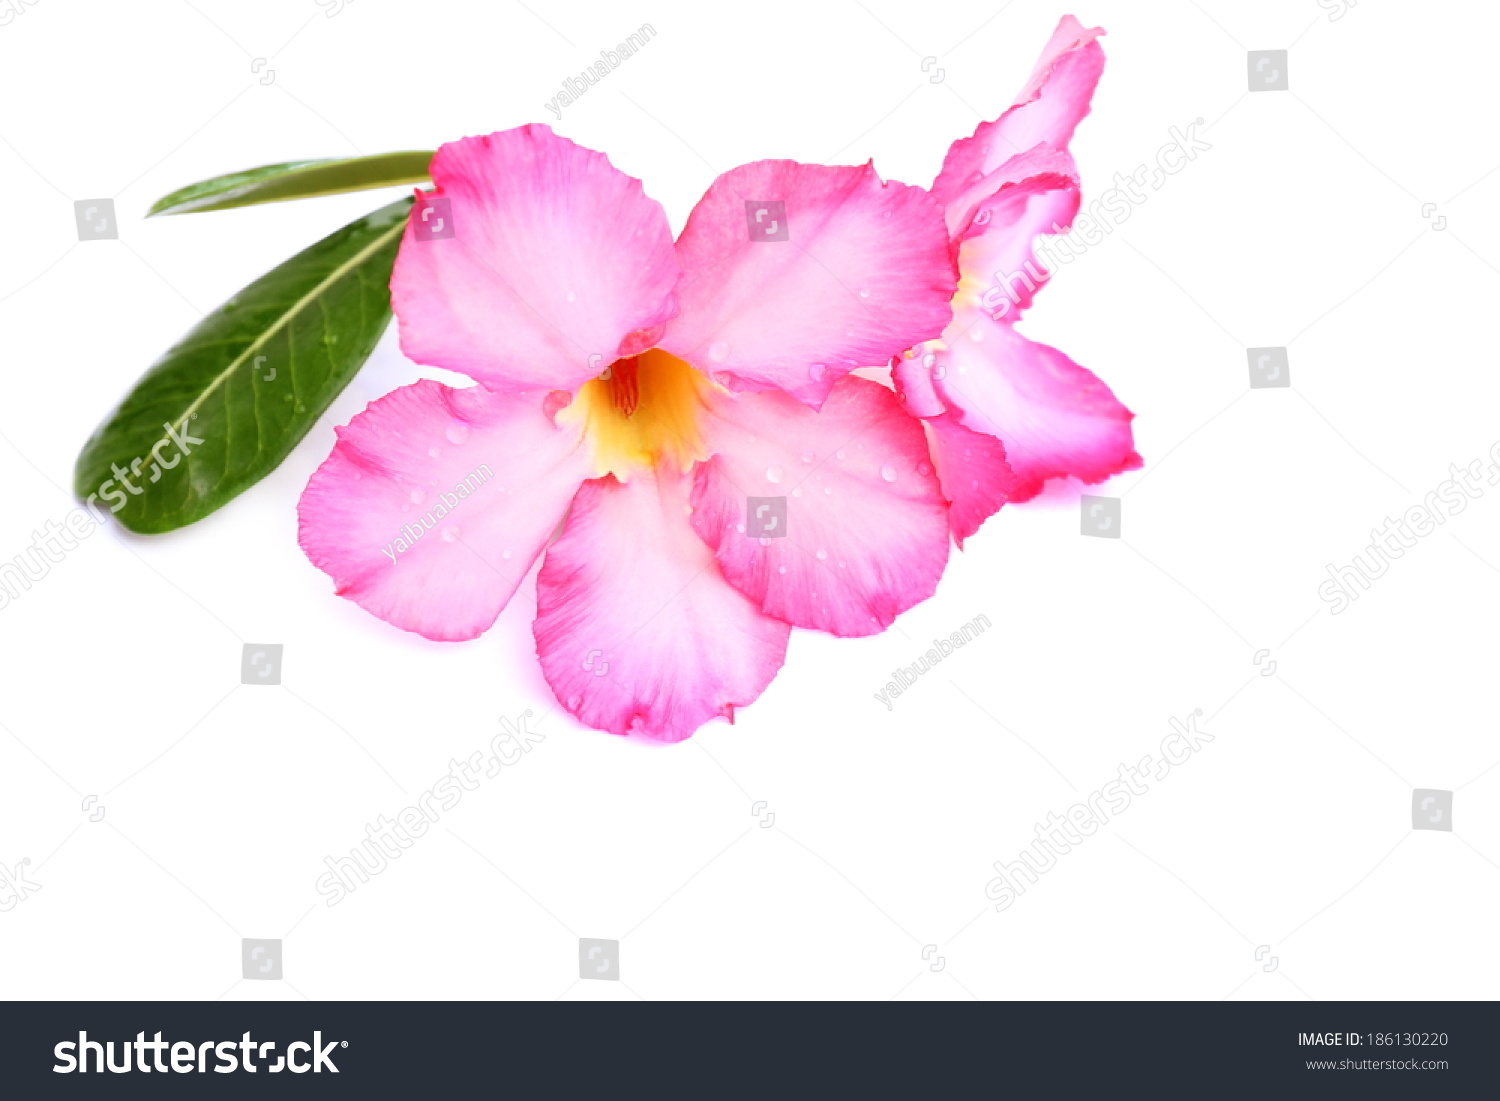 黑斑羚莉莉,沙漠玫瑰,模拟杜鹃花,Pinkbignonia